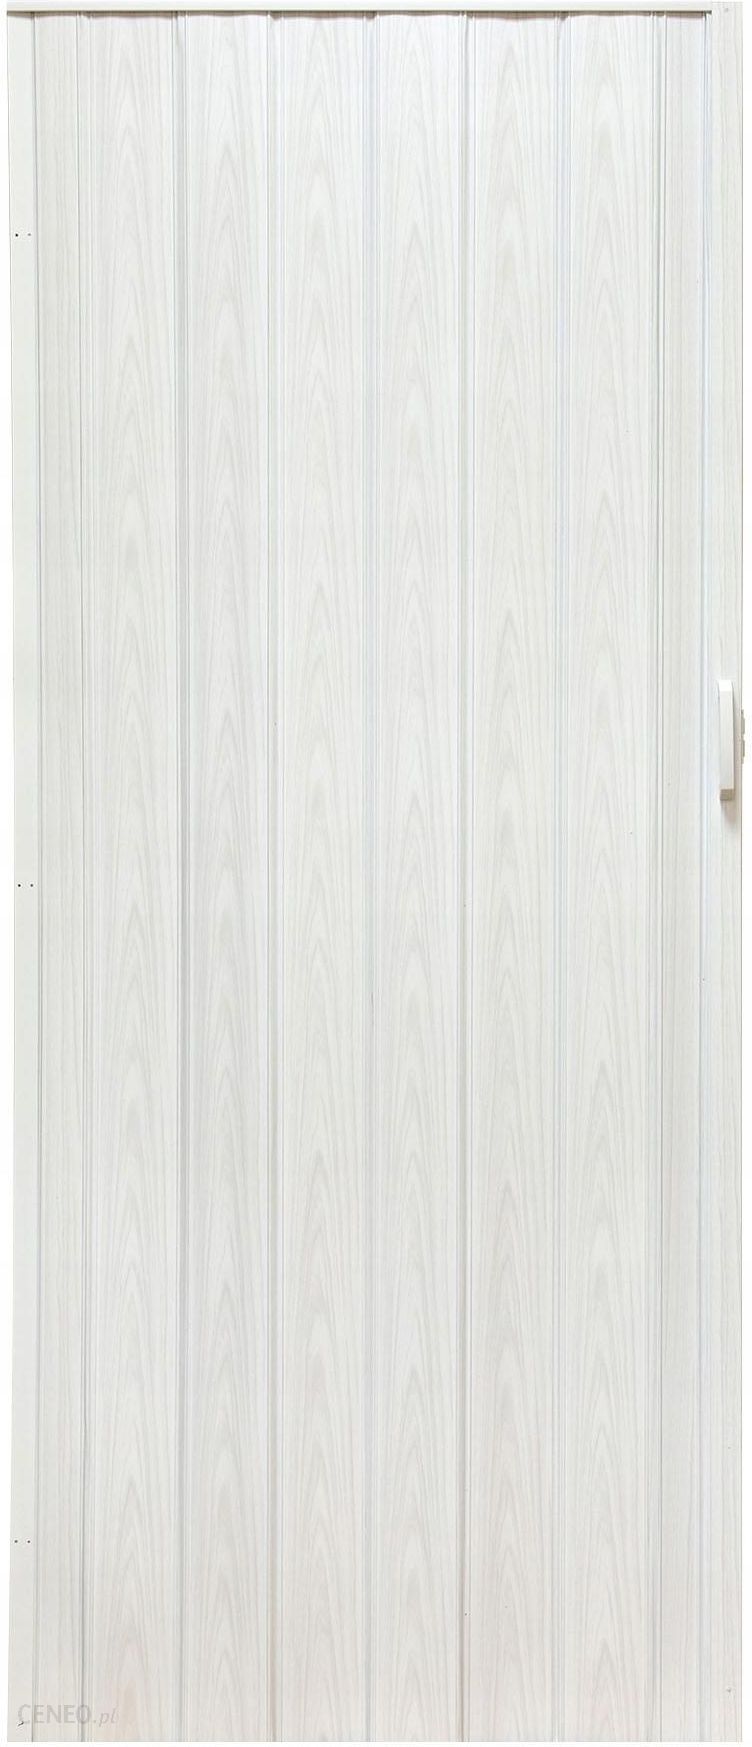 Gockowiak Drzwi Harmonijkowe Przesuwne Biały Dąb 004 100cm